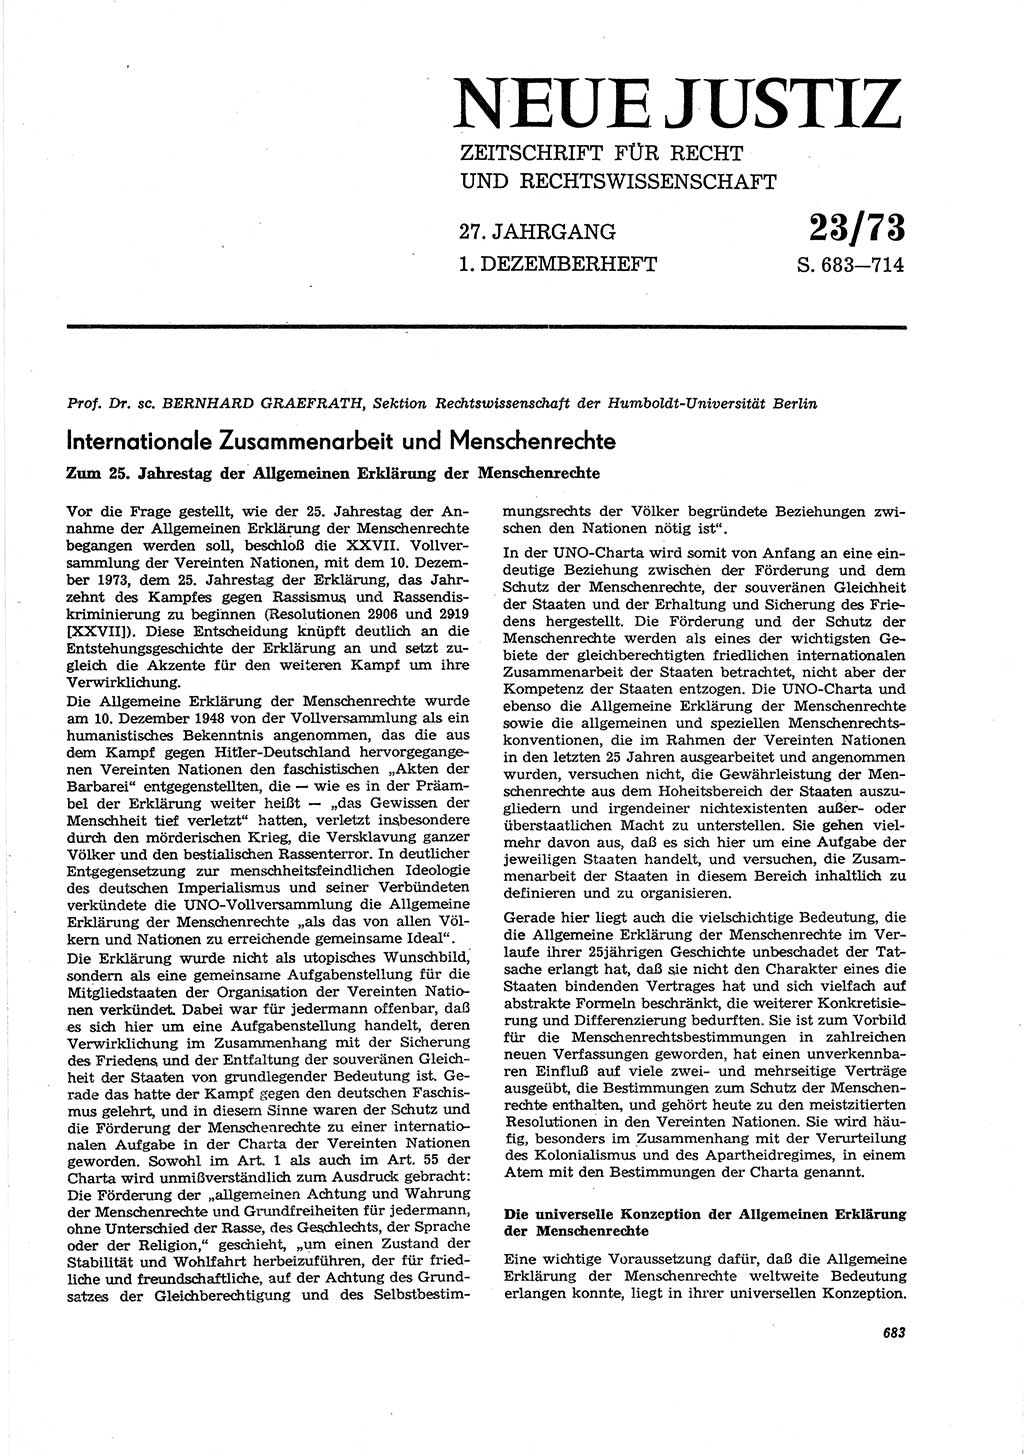 Neue Justiz (NJ), Zeitschrift für Recht und Rechtswissenschaft [Deutsche Demokratische Republik (DDR)], 27. Jahrgang 1973, Seite 683 (NJ DDR 1973, S. 683)